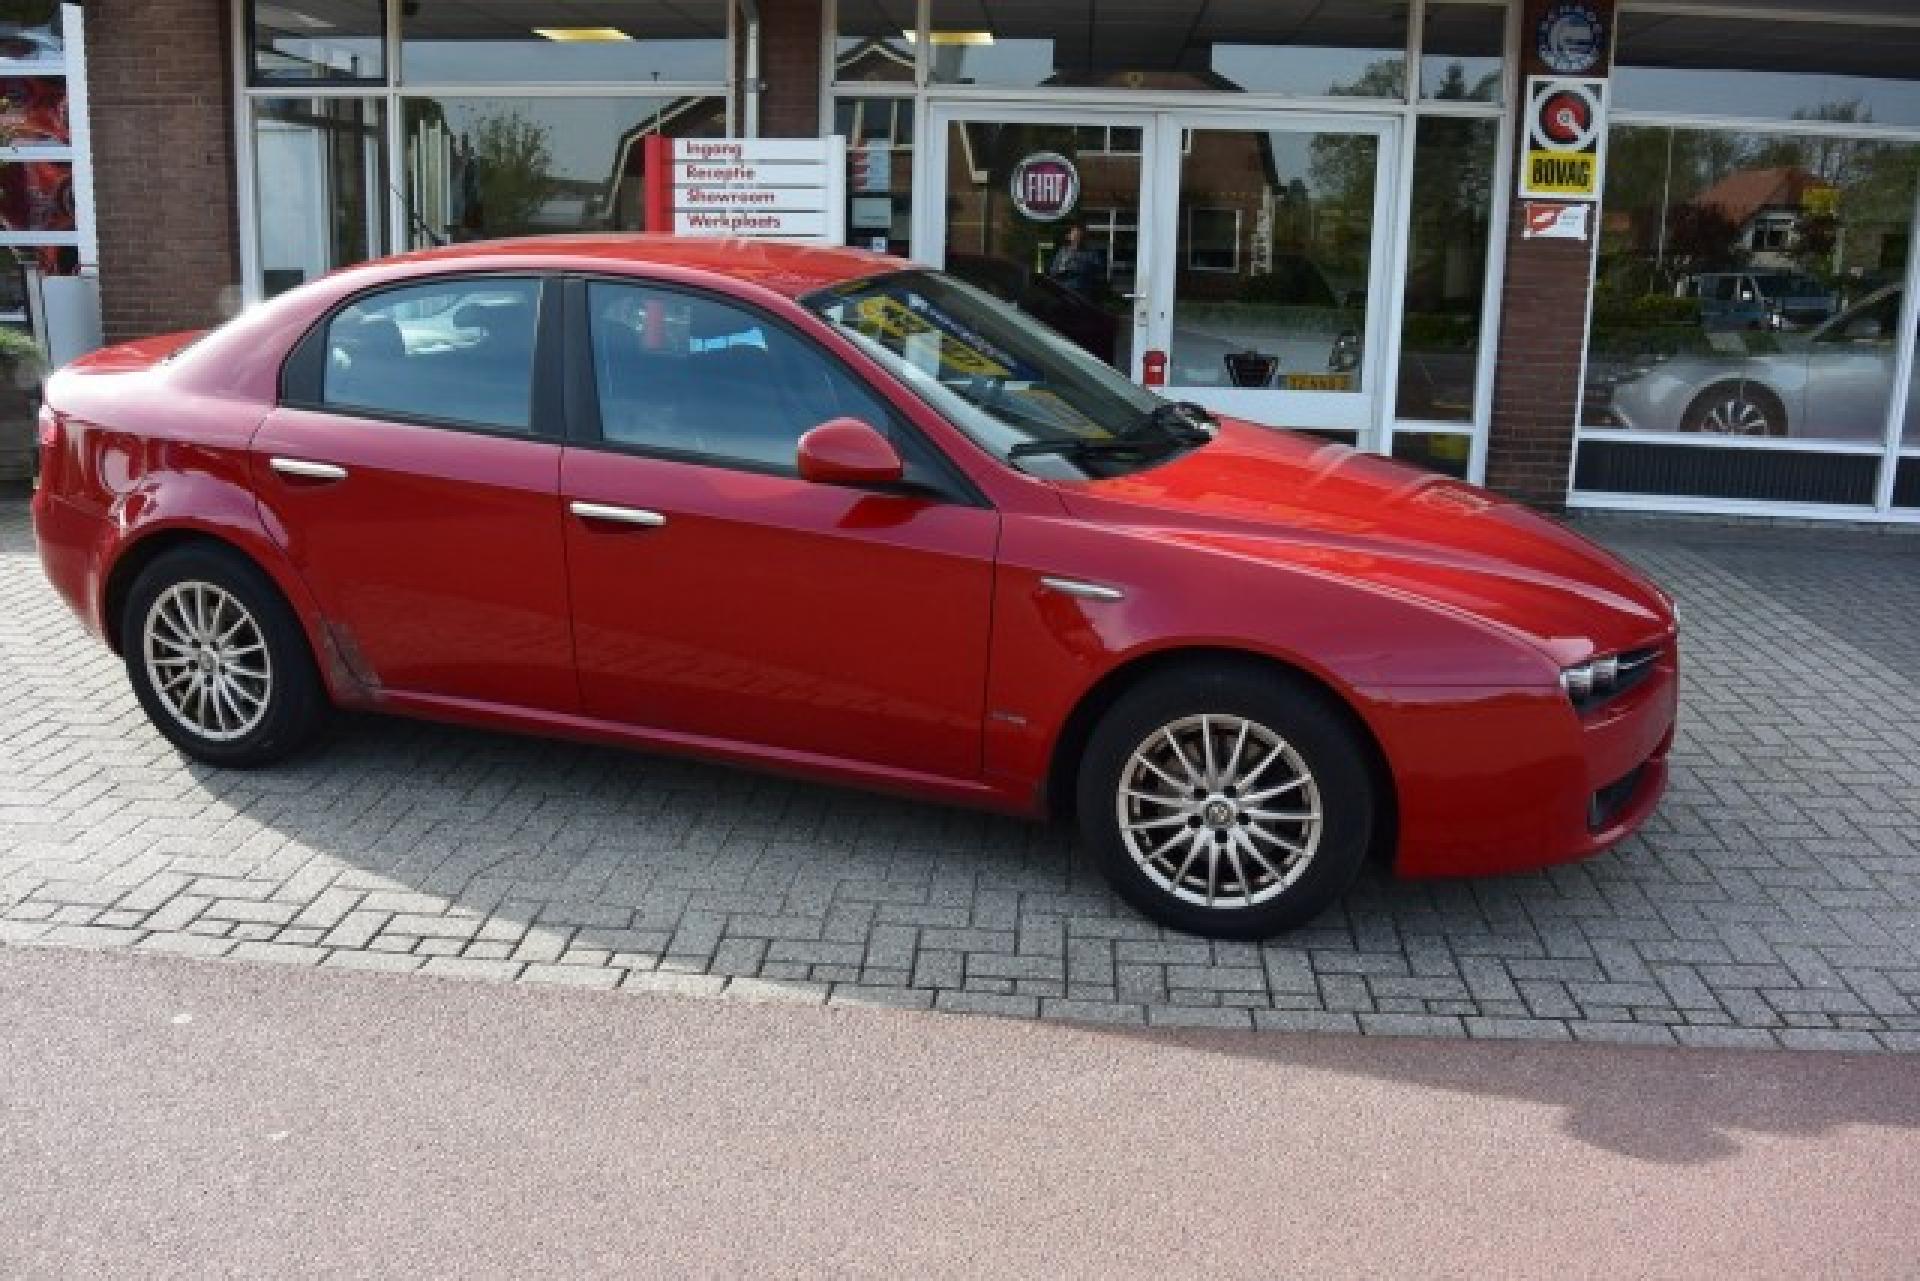 Tweedehands Alfa Romeo occasion kopen